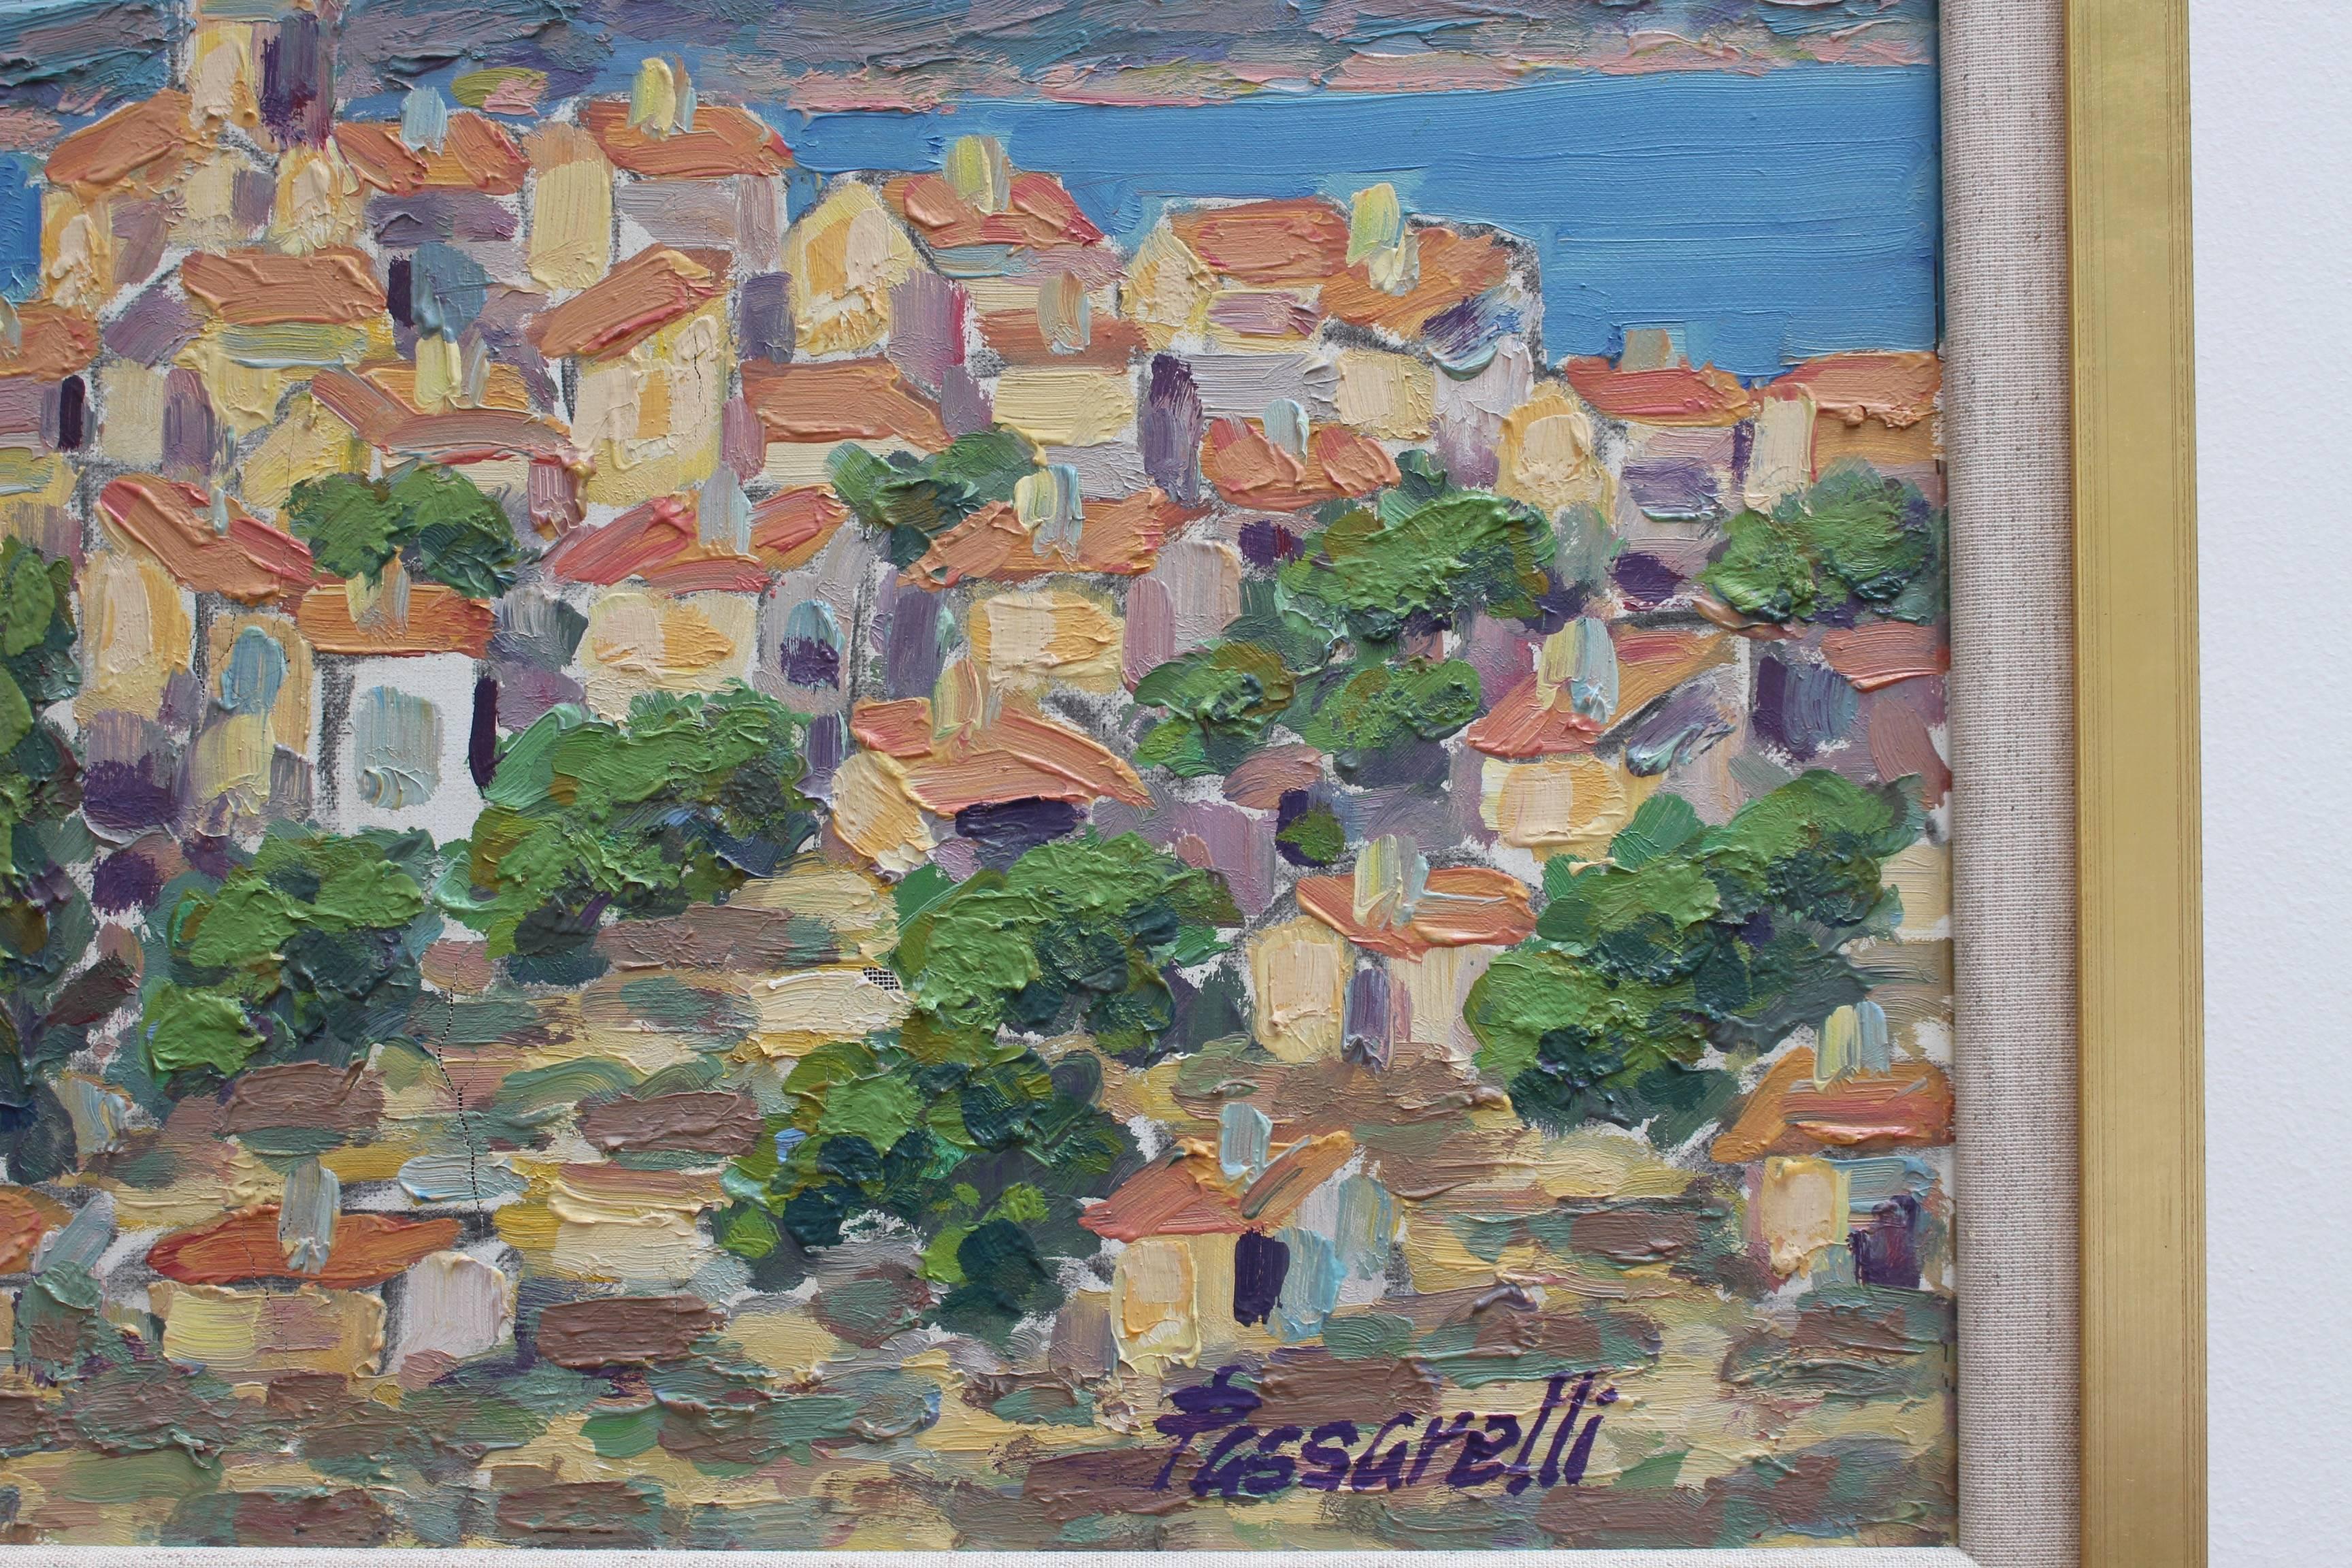 Mario Passarelli (né en 1930):: peintre impressionniste né en Provence dans le sud de la France et appartenant au groupe des peintres faisant référence à l'« École Franaise ». 

Cette joyeuse œuvre d'art représente les sommets du village de